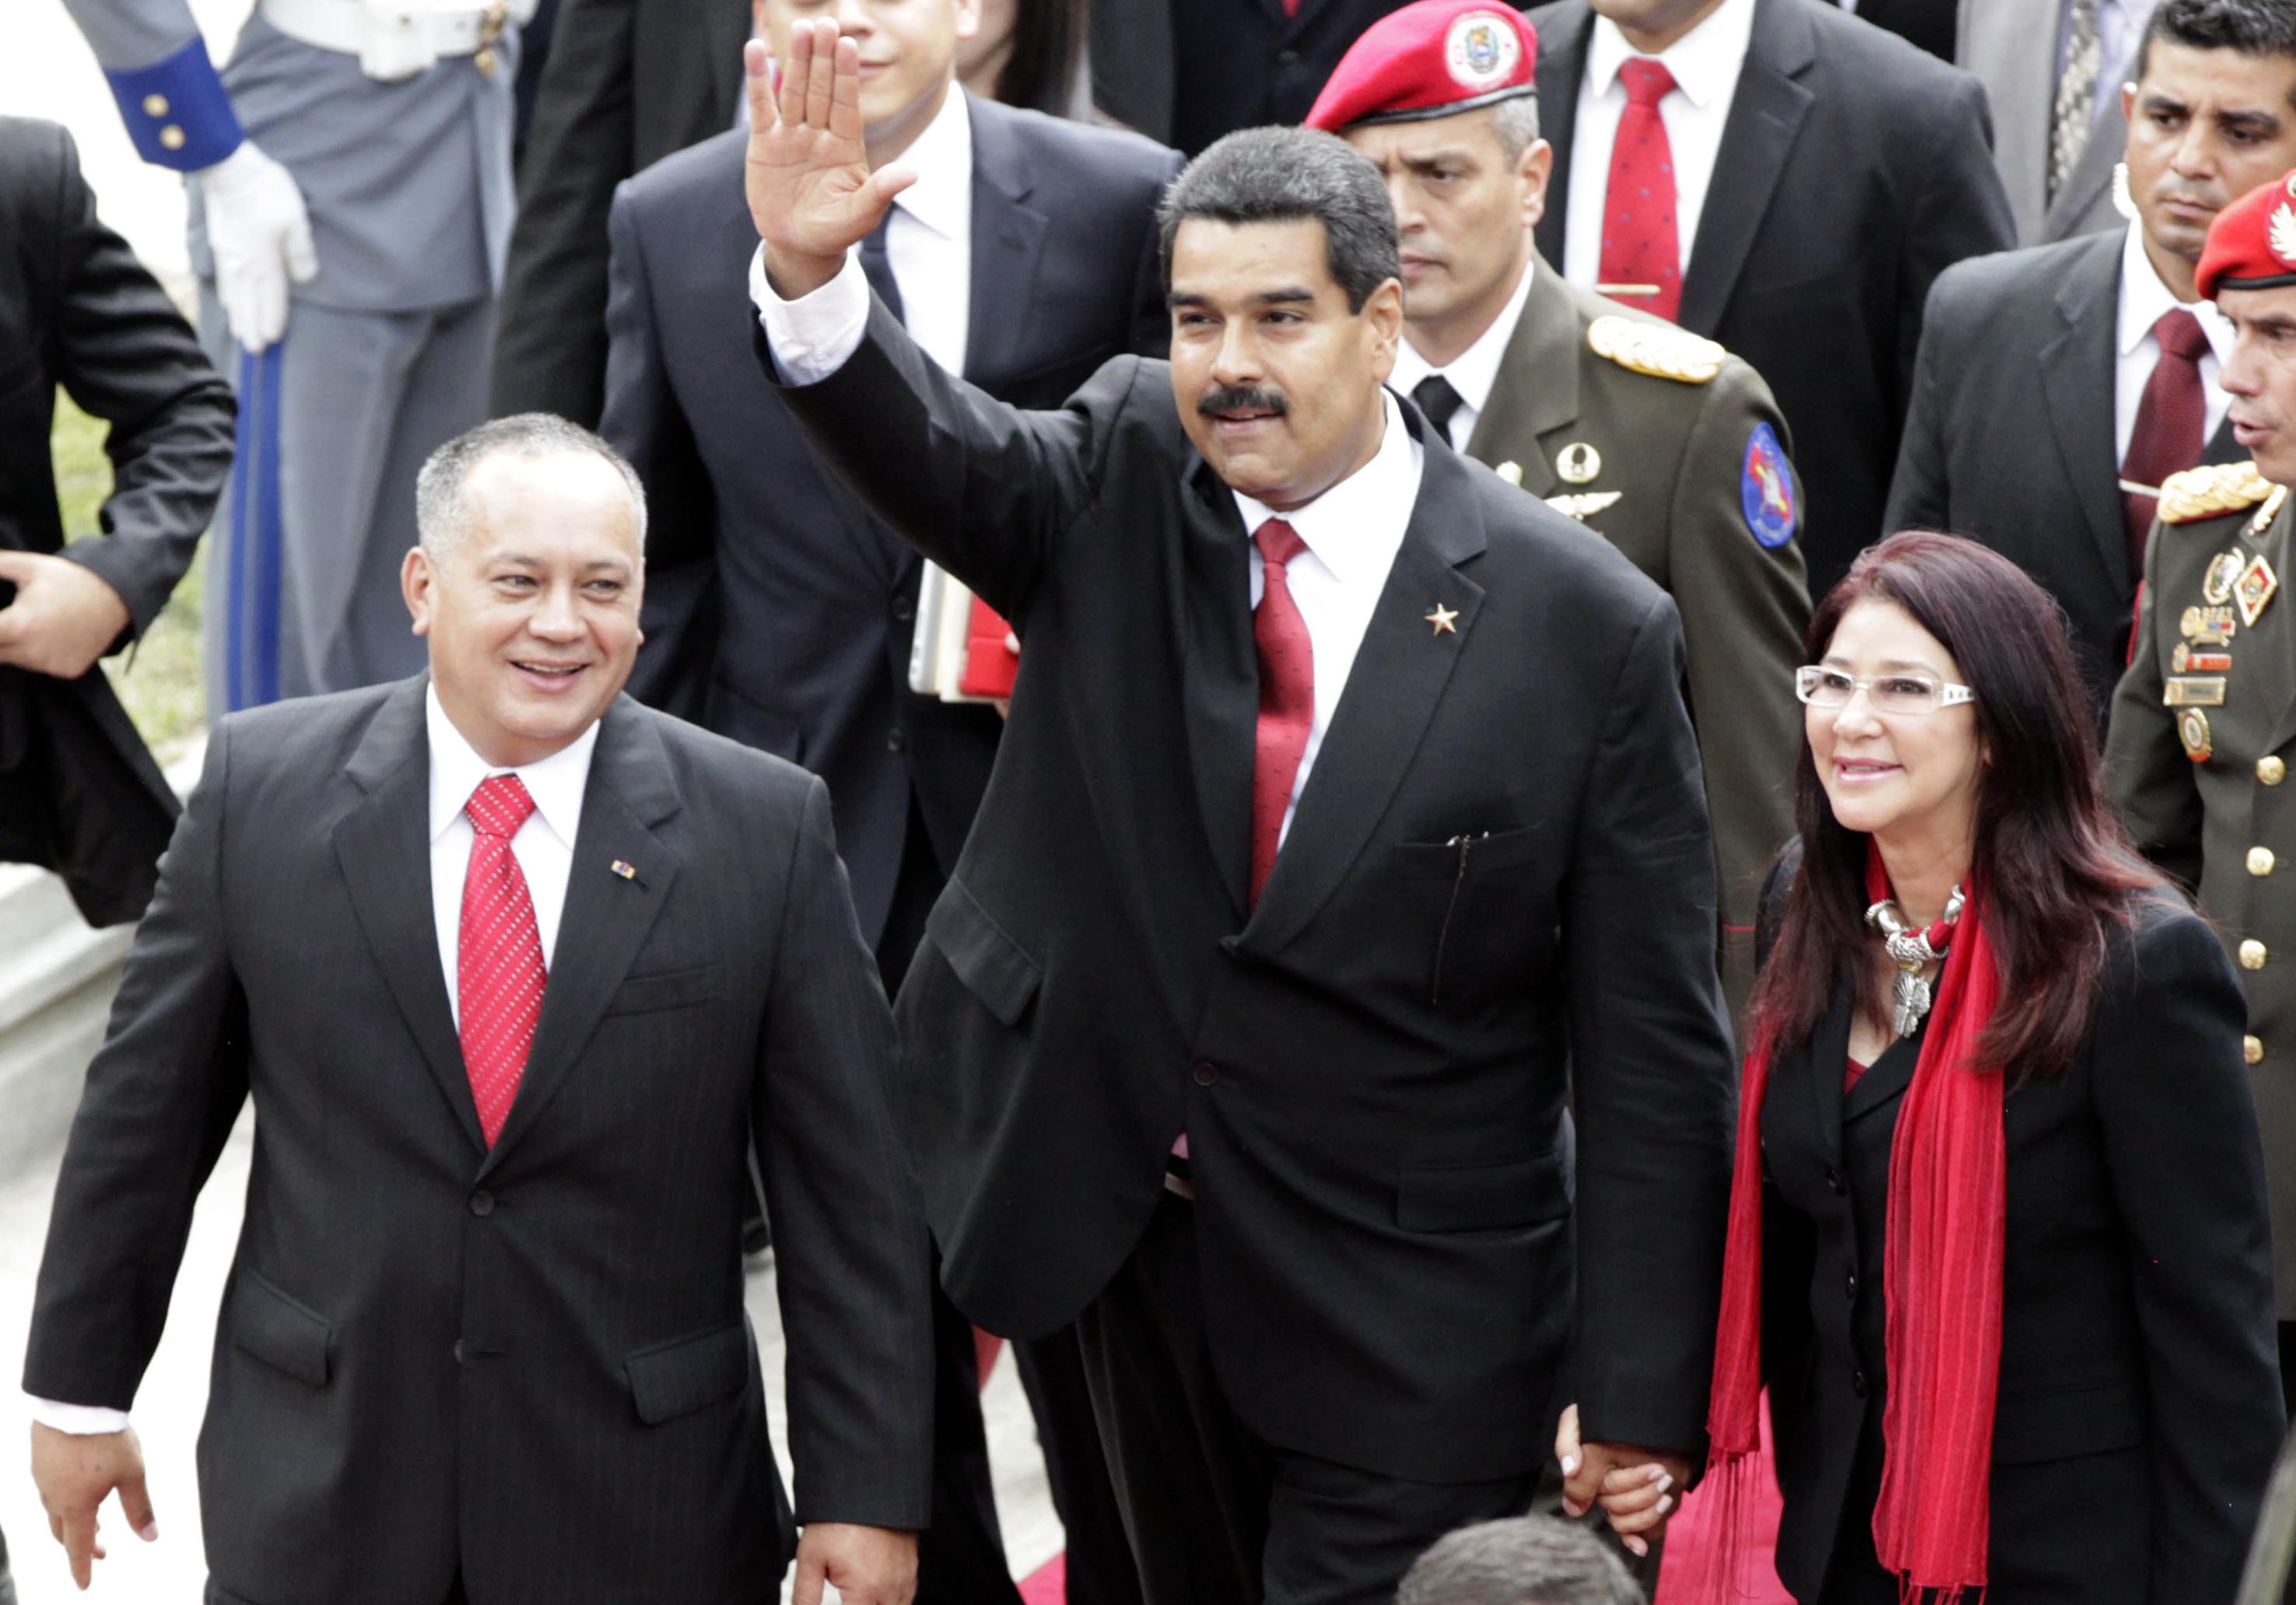 Diosdado Cabello y Nicolás Maduro durante la toma de posesión en 2013 en Venezuela